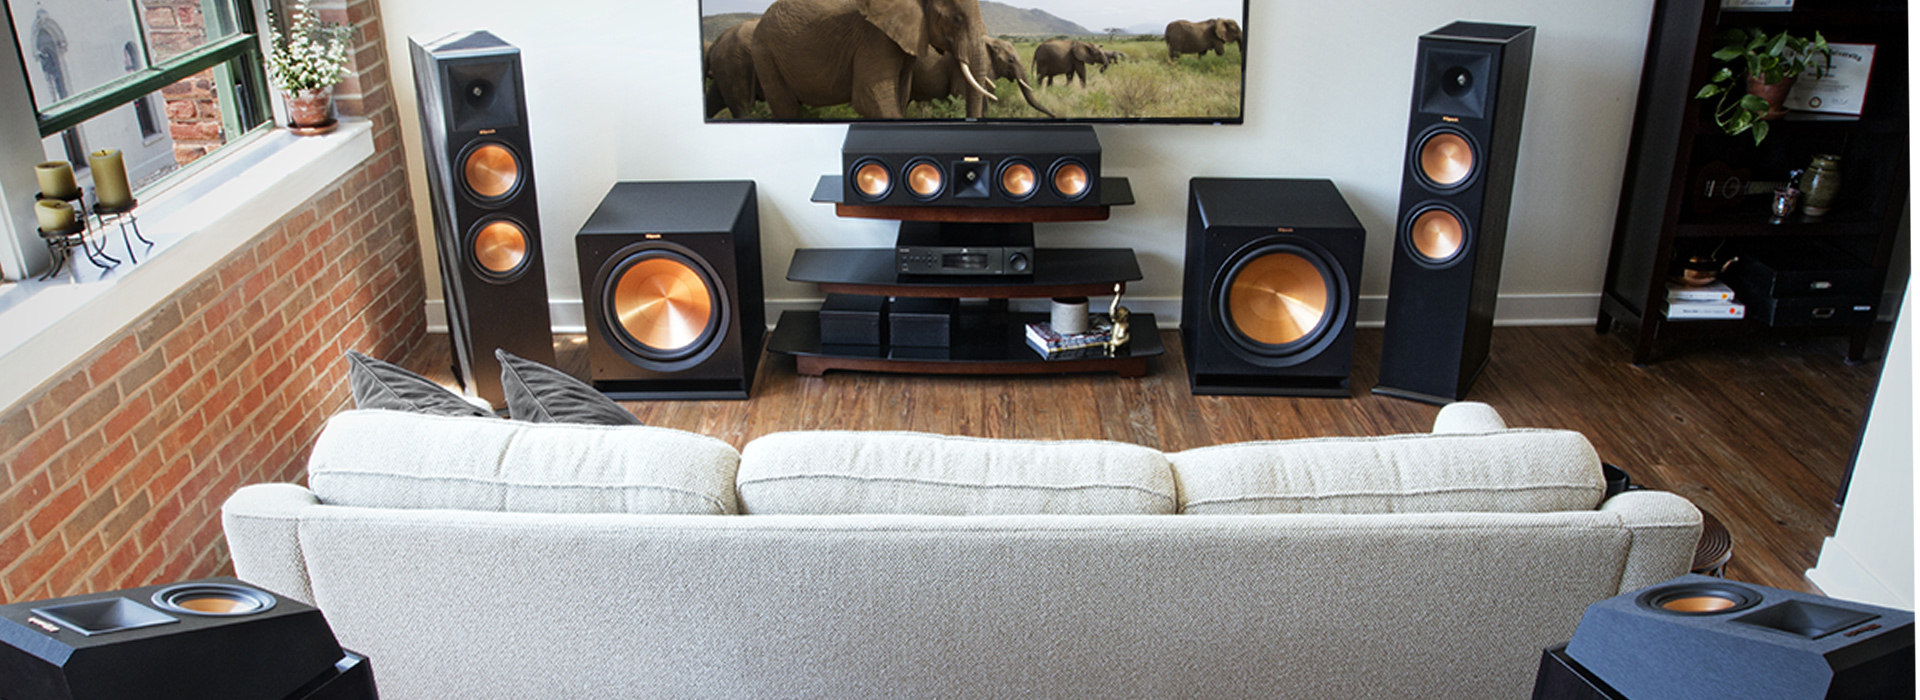 speakers for living room tv